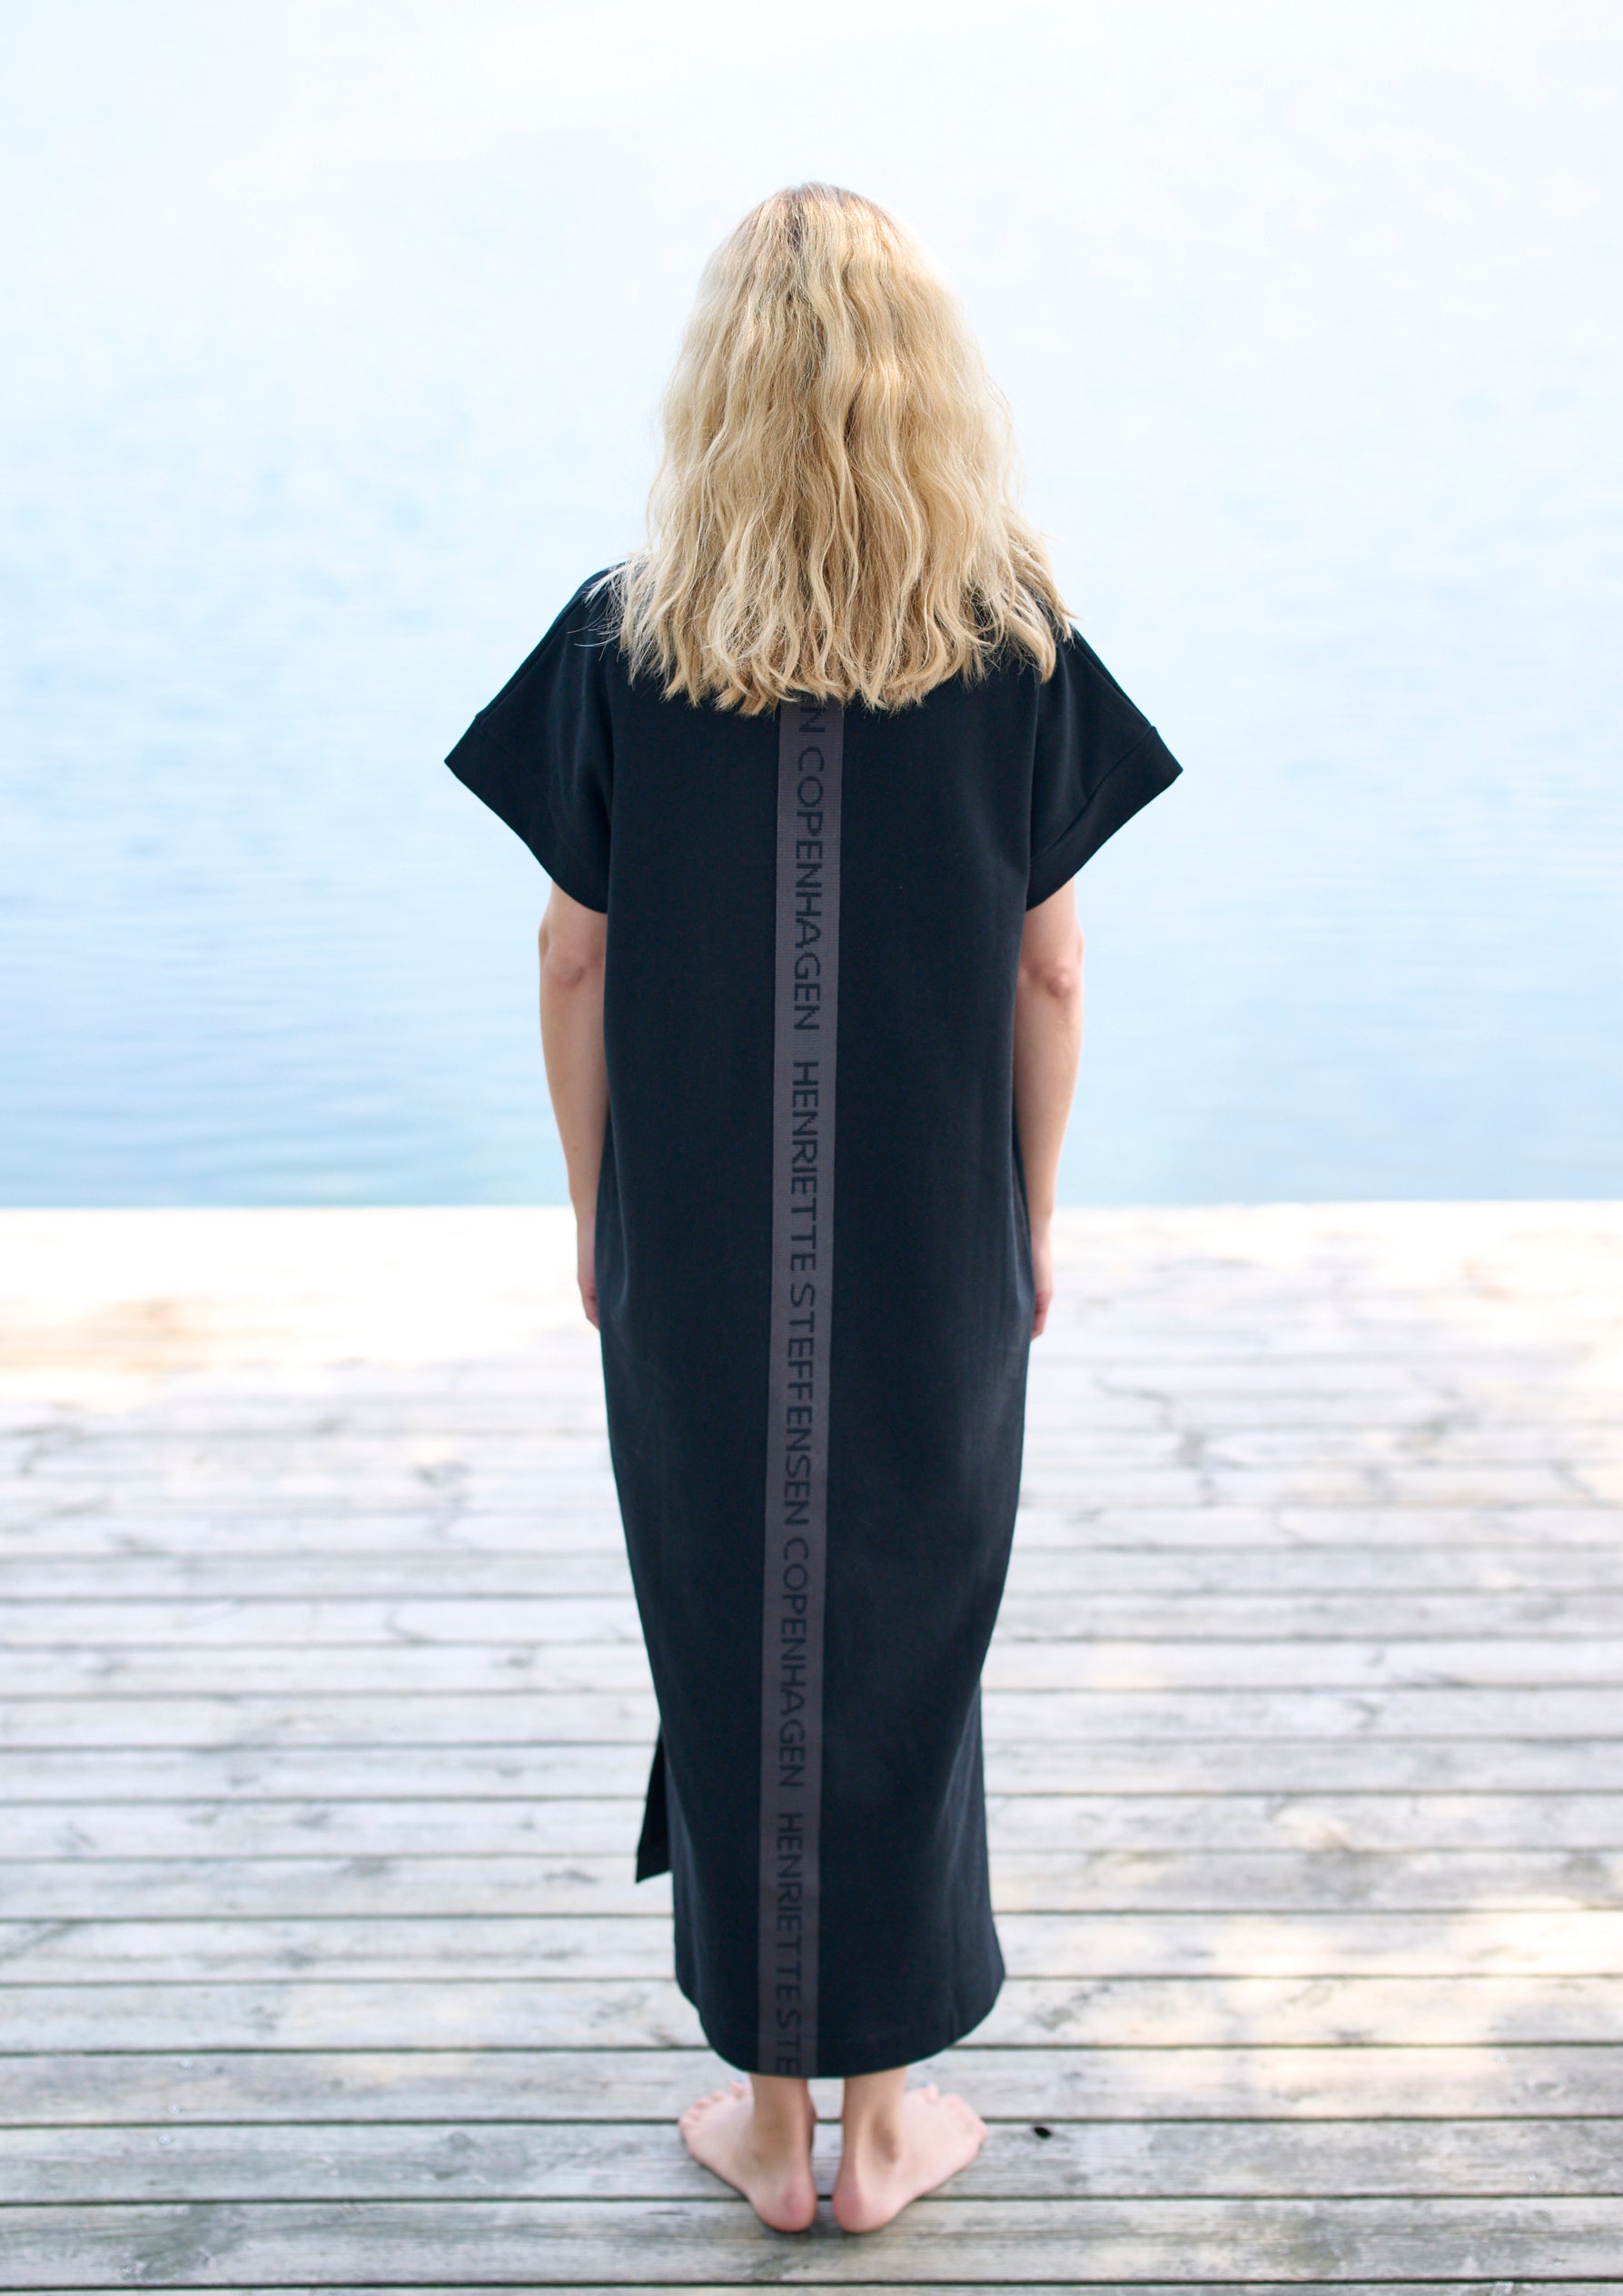 HENRIETTE STEFFENSEN COPENHAGEN LONG DRESS - 73402 DRESS cotton BLACK 900